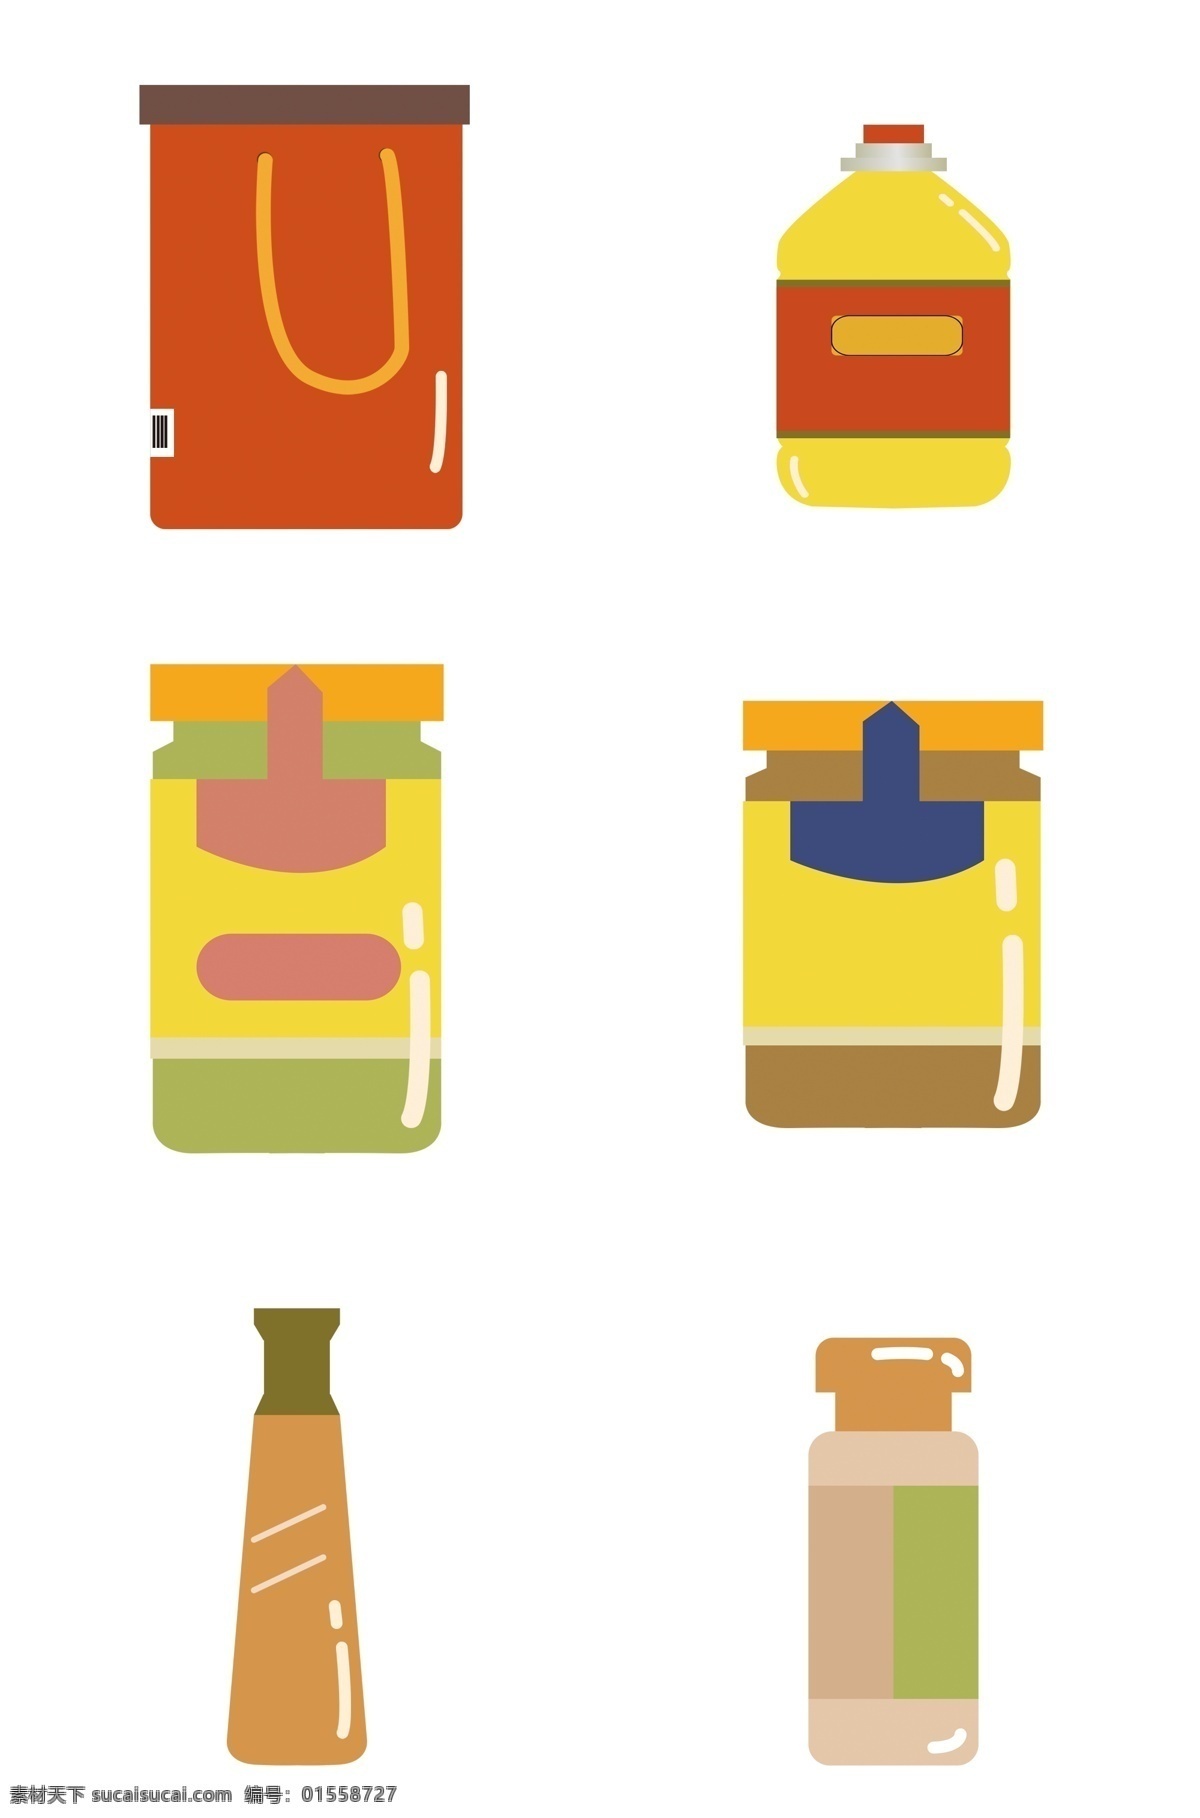 卡通 生活用品 调料 图标 扁平 茶叶罐 食用油 果酱 酱油 胡椒粉 食品包装